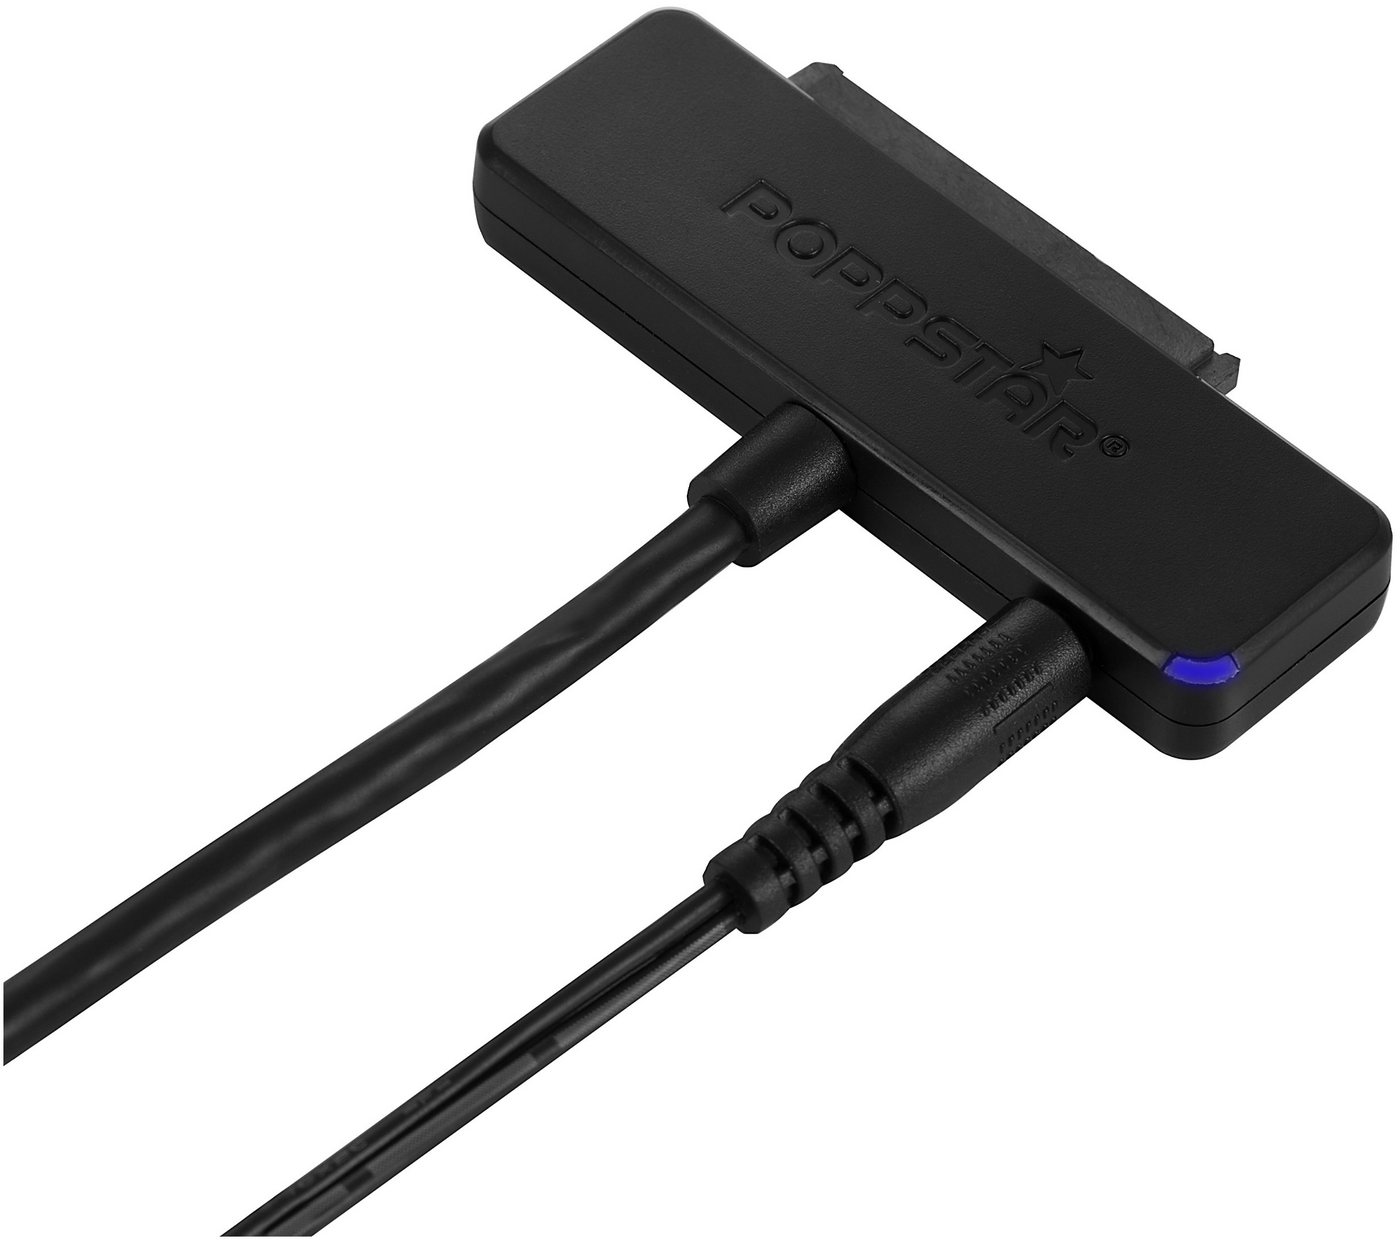 Poppstar Anschlusskabel für externe Festplatten USB-Adapter S-ATA zu USB 3.0 Typ A, USB 3.1 Gen 1 Typ A Festplattenadapter HDD / SSD 2,5 + 3,5"" von Poppstar